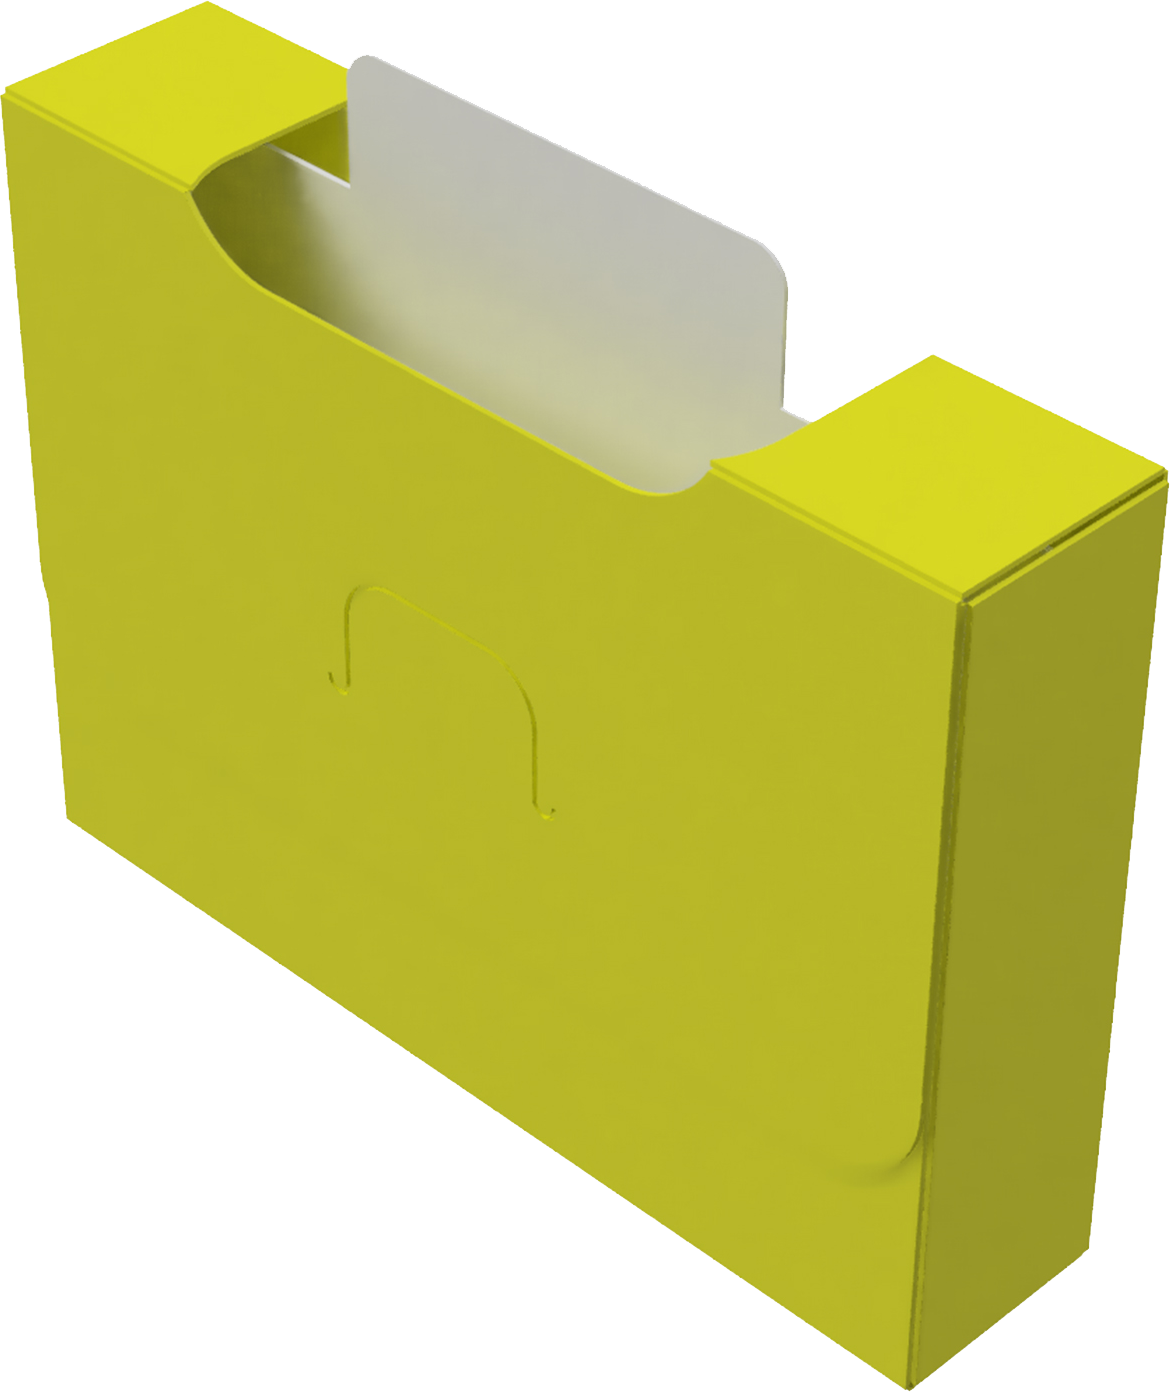 Картотека UniqCardFile Standart 20 mm (Желтый) (544664)